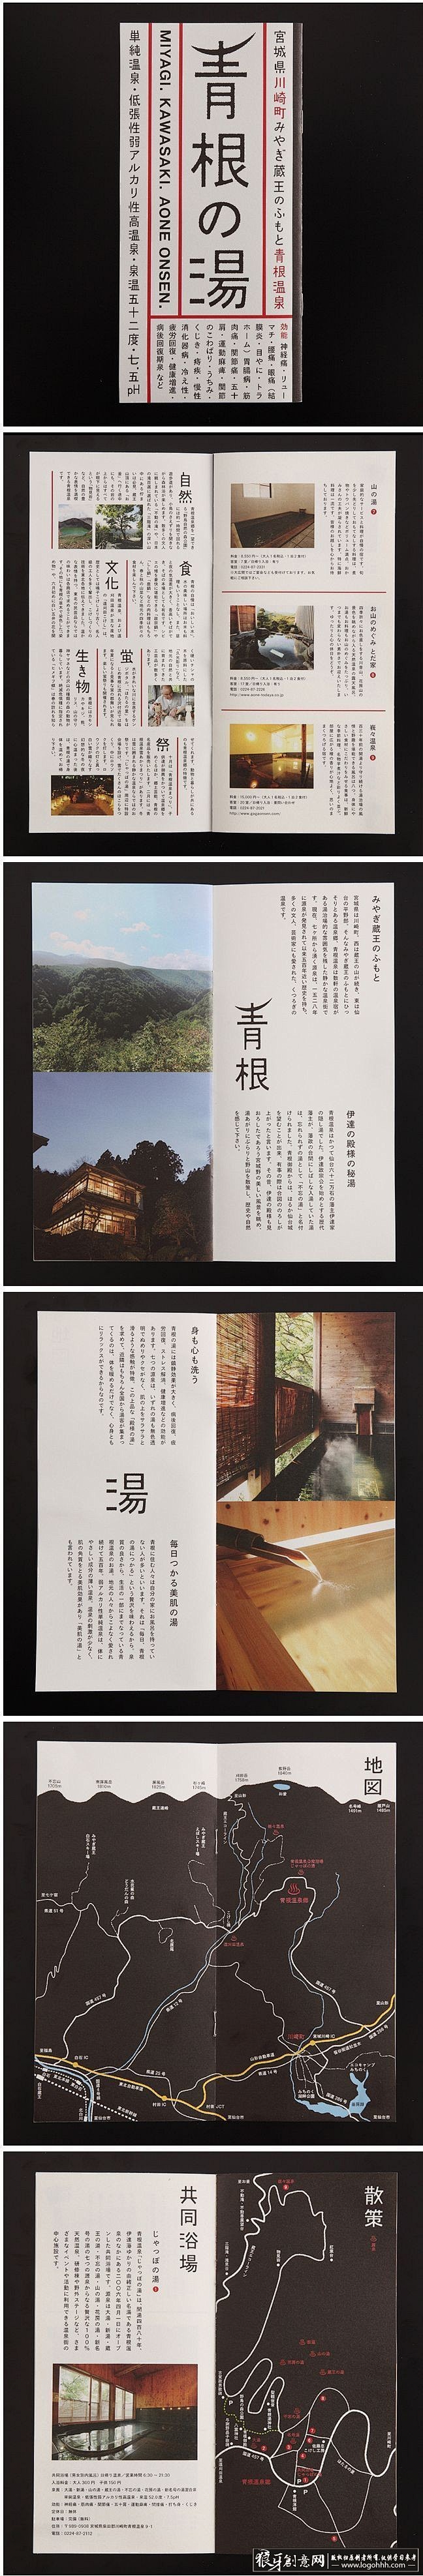 日式画册设计 日本画册设计 创意画册内页...